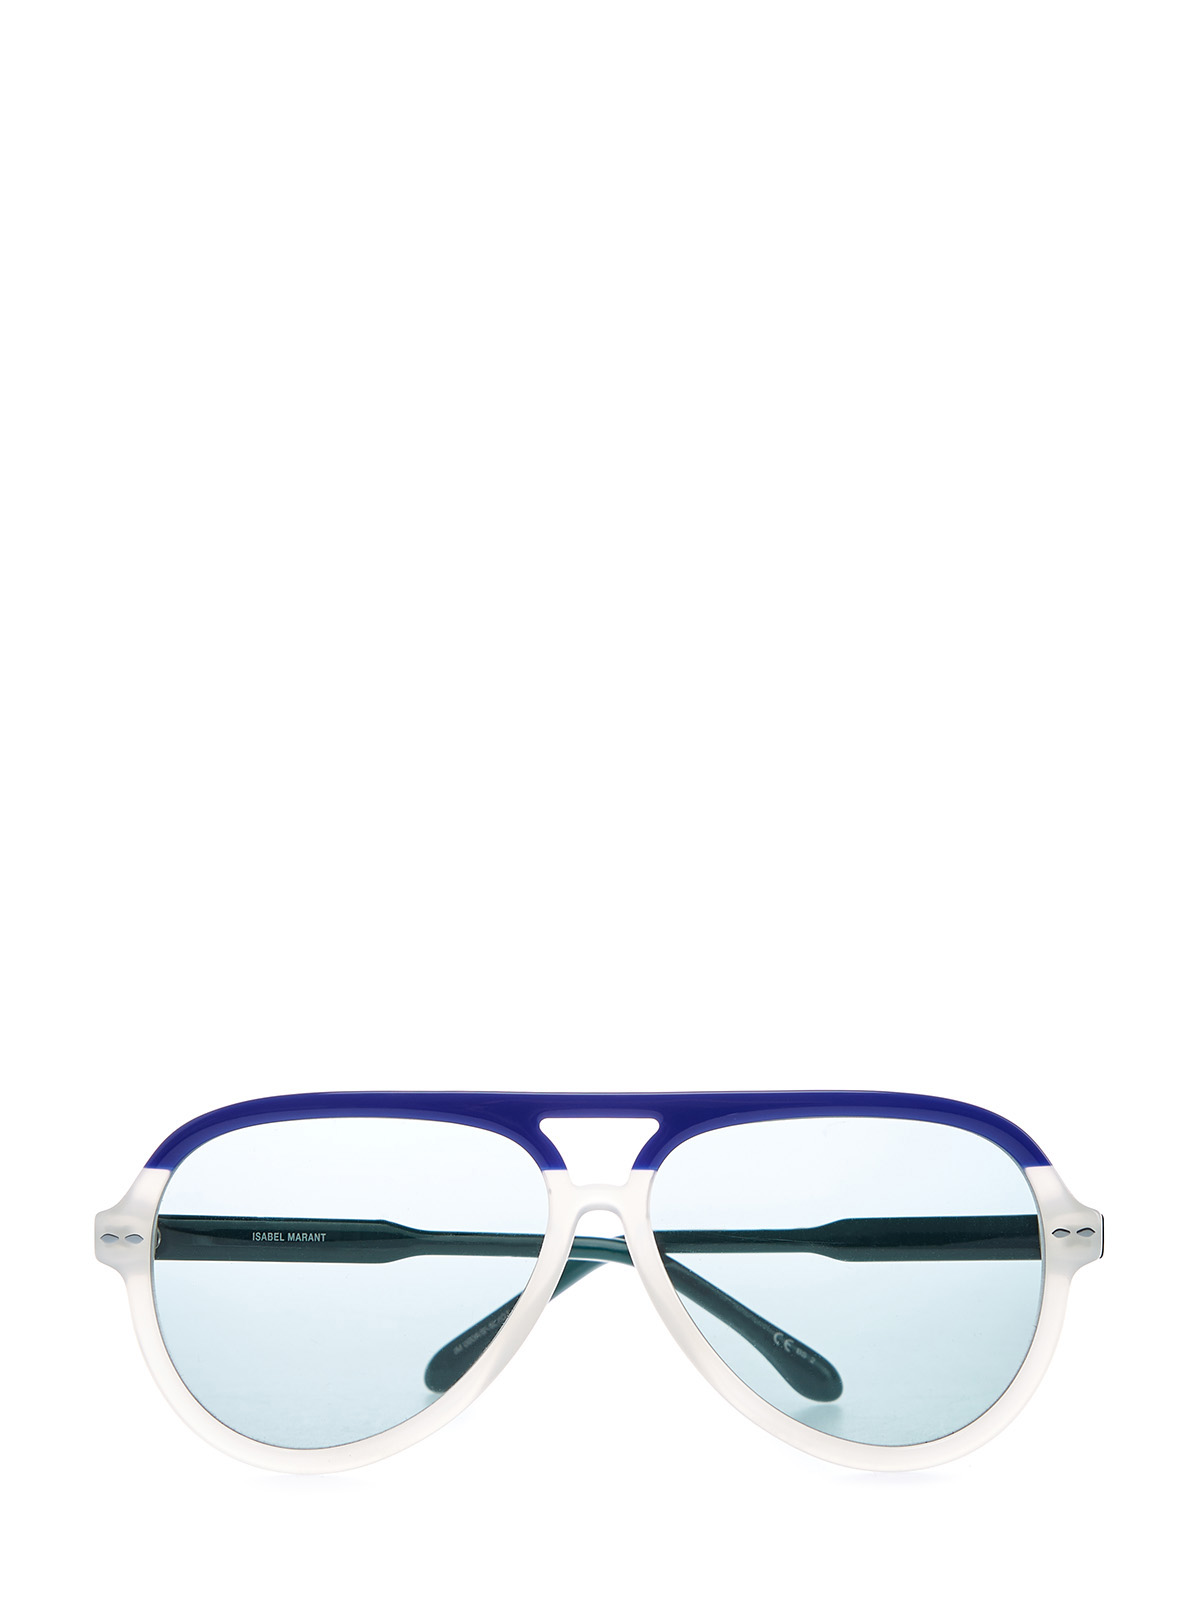 Очки-авиаторы из легкого ацетата в стиле colorblock Isabel Marant(sunglasses), цвет мульти - фото 1